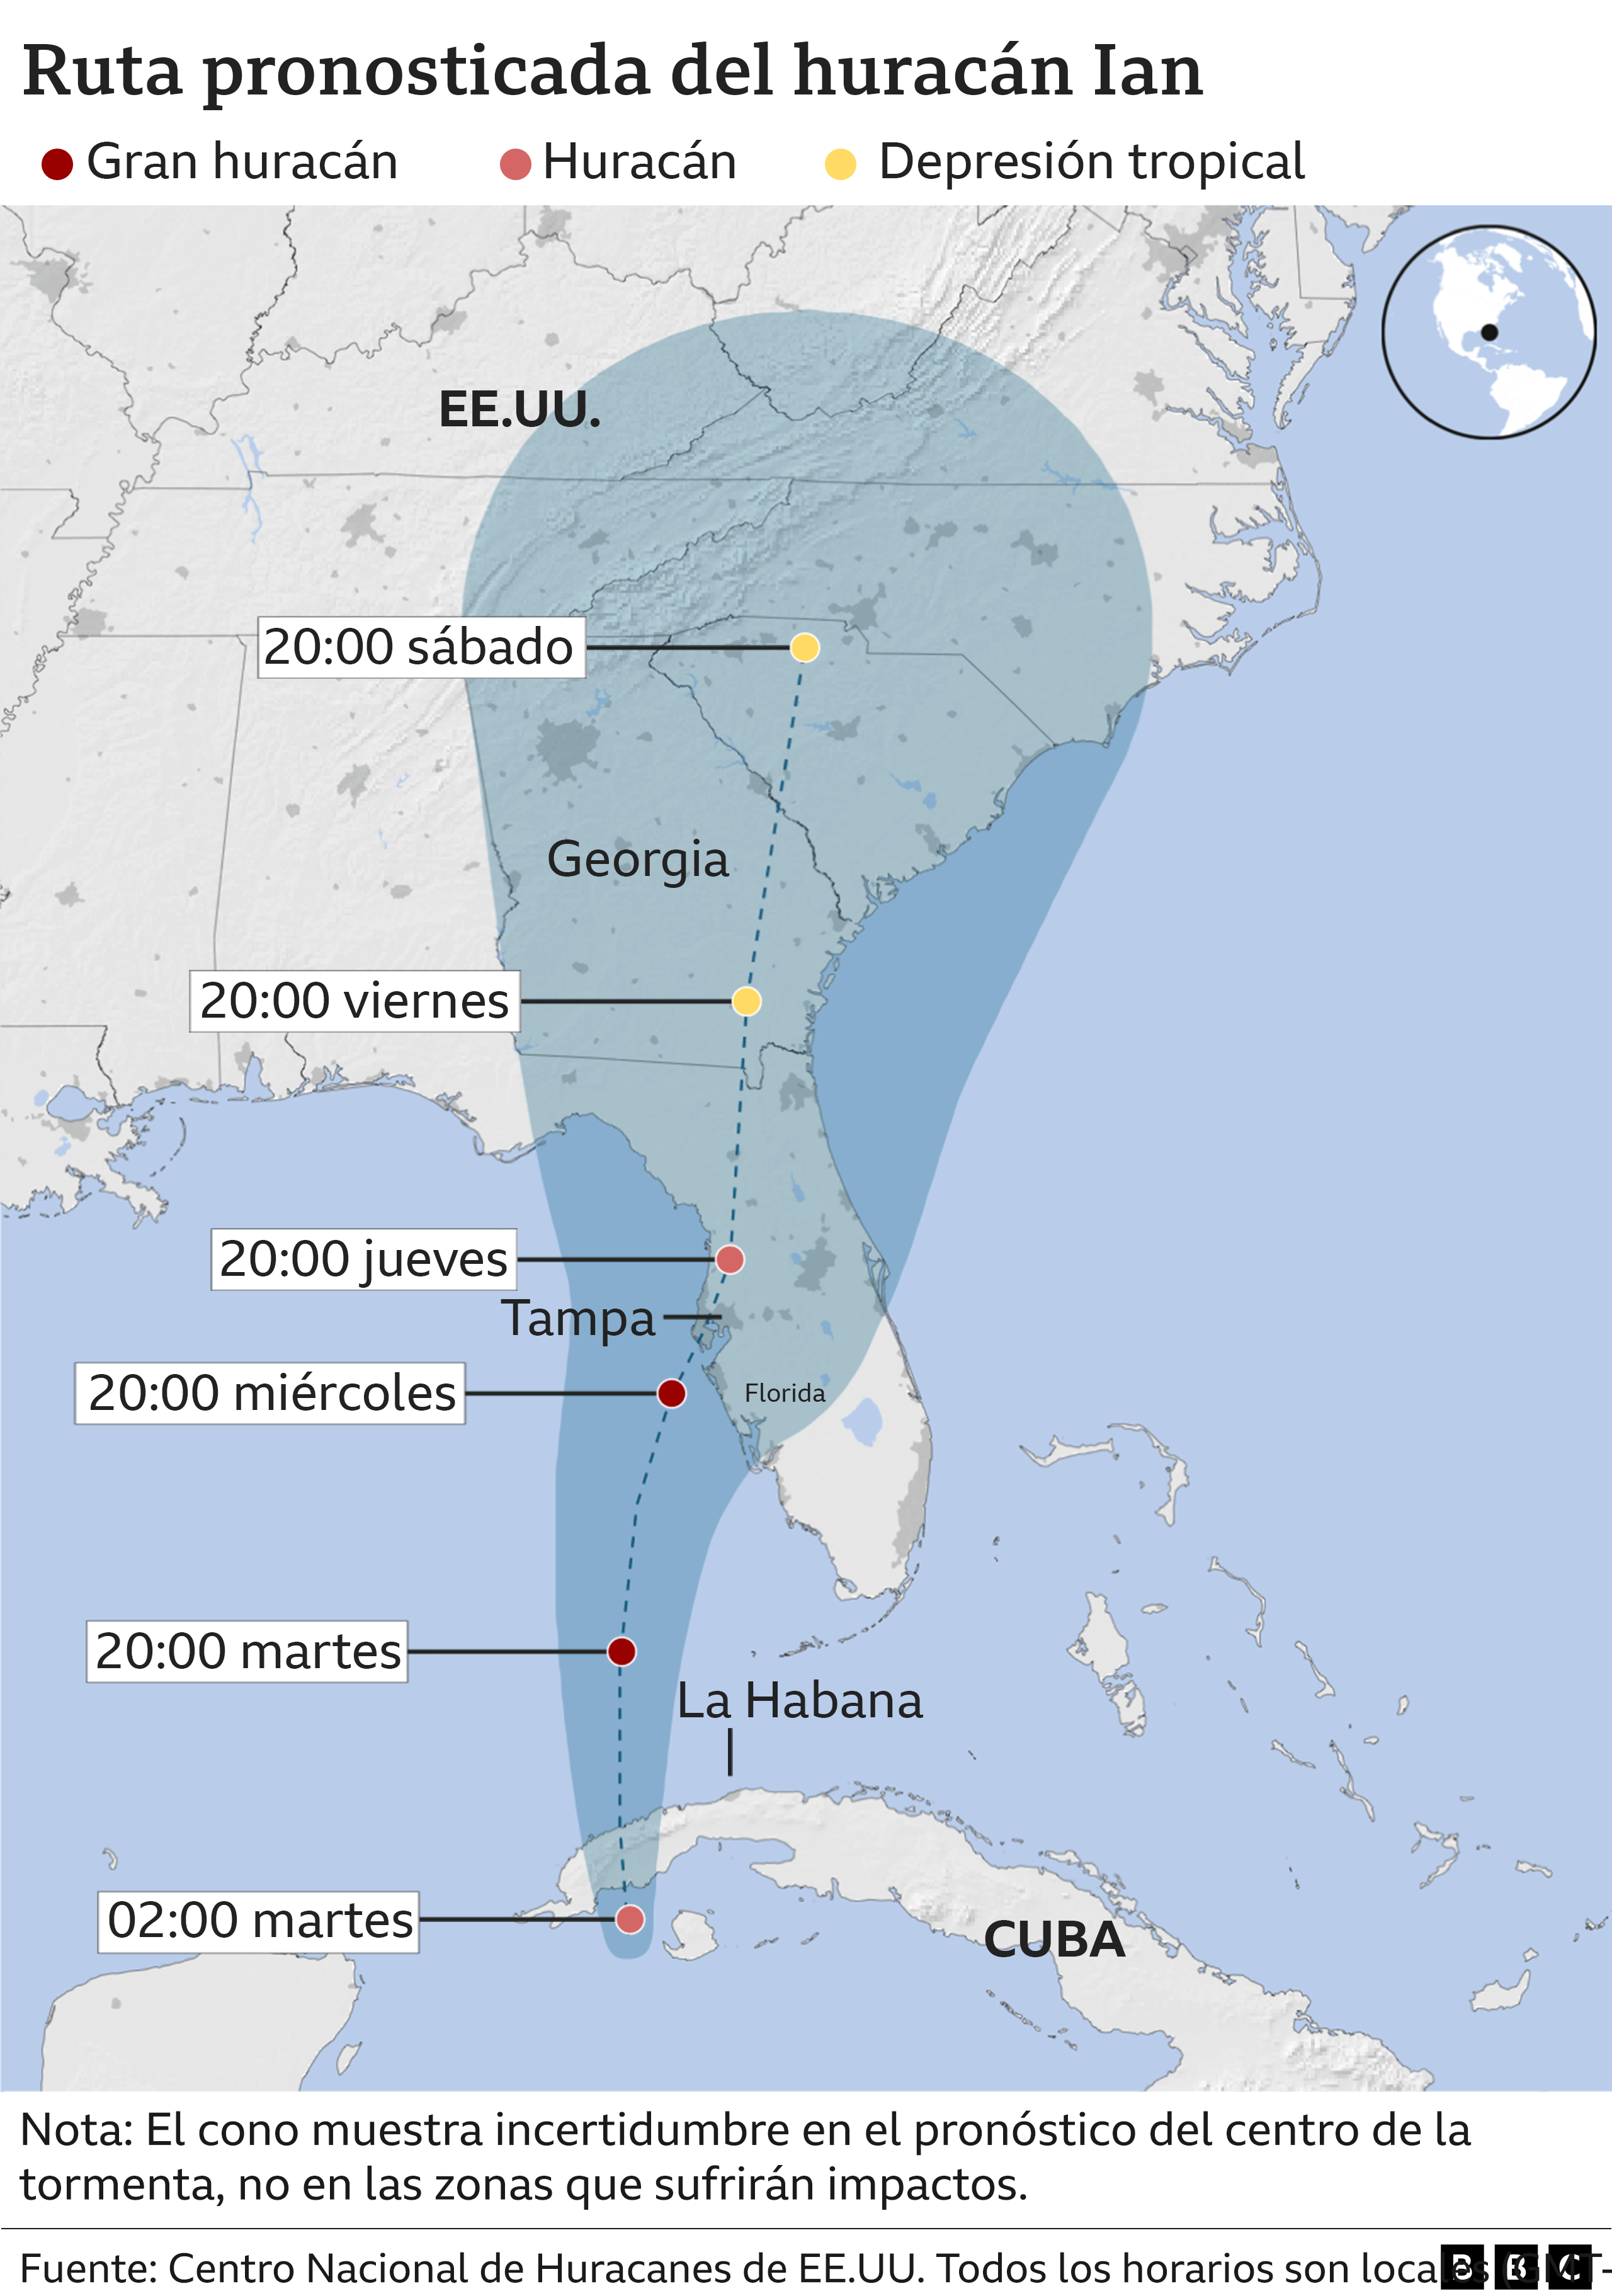 Ruta pronosticada del huracán Ian a 27 de septiembre